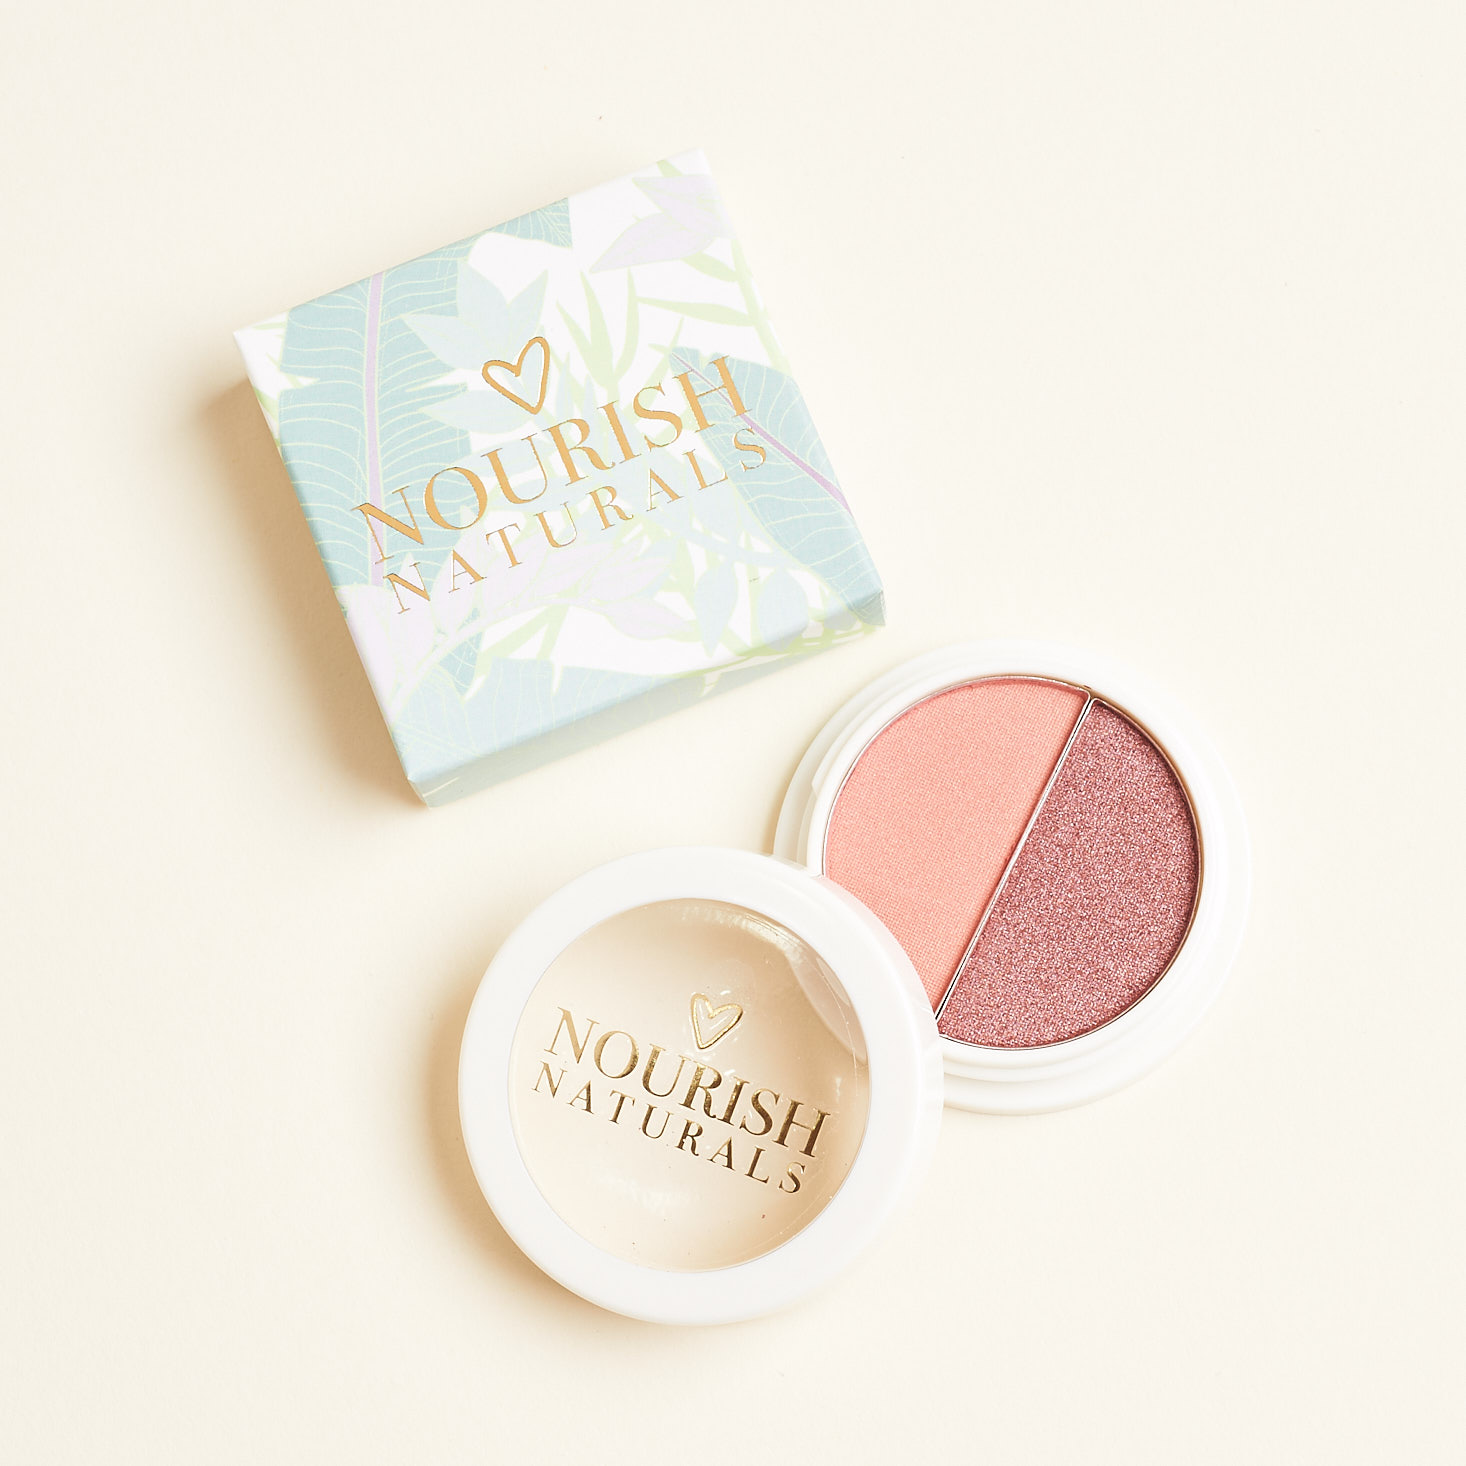 Nourish Beauty Box May 2019 beauty box review blush duo